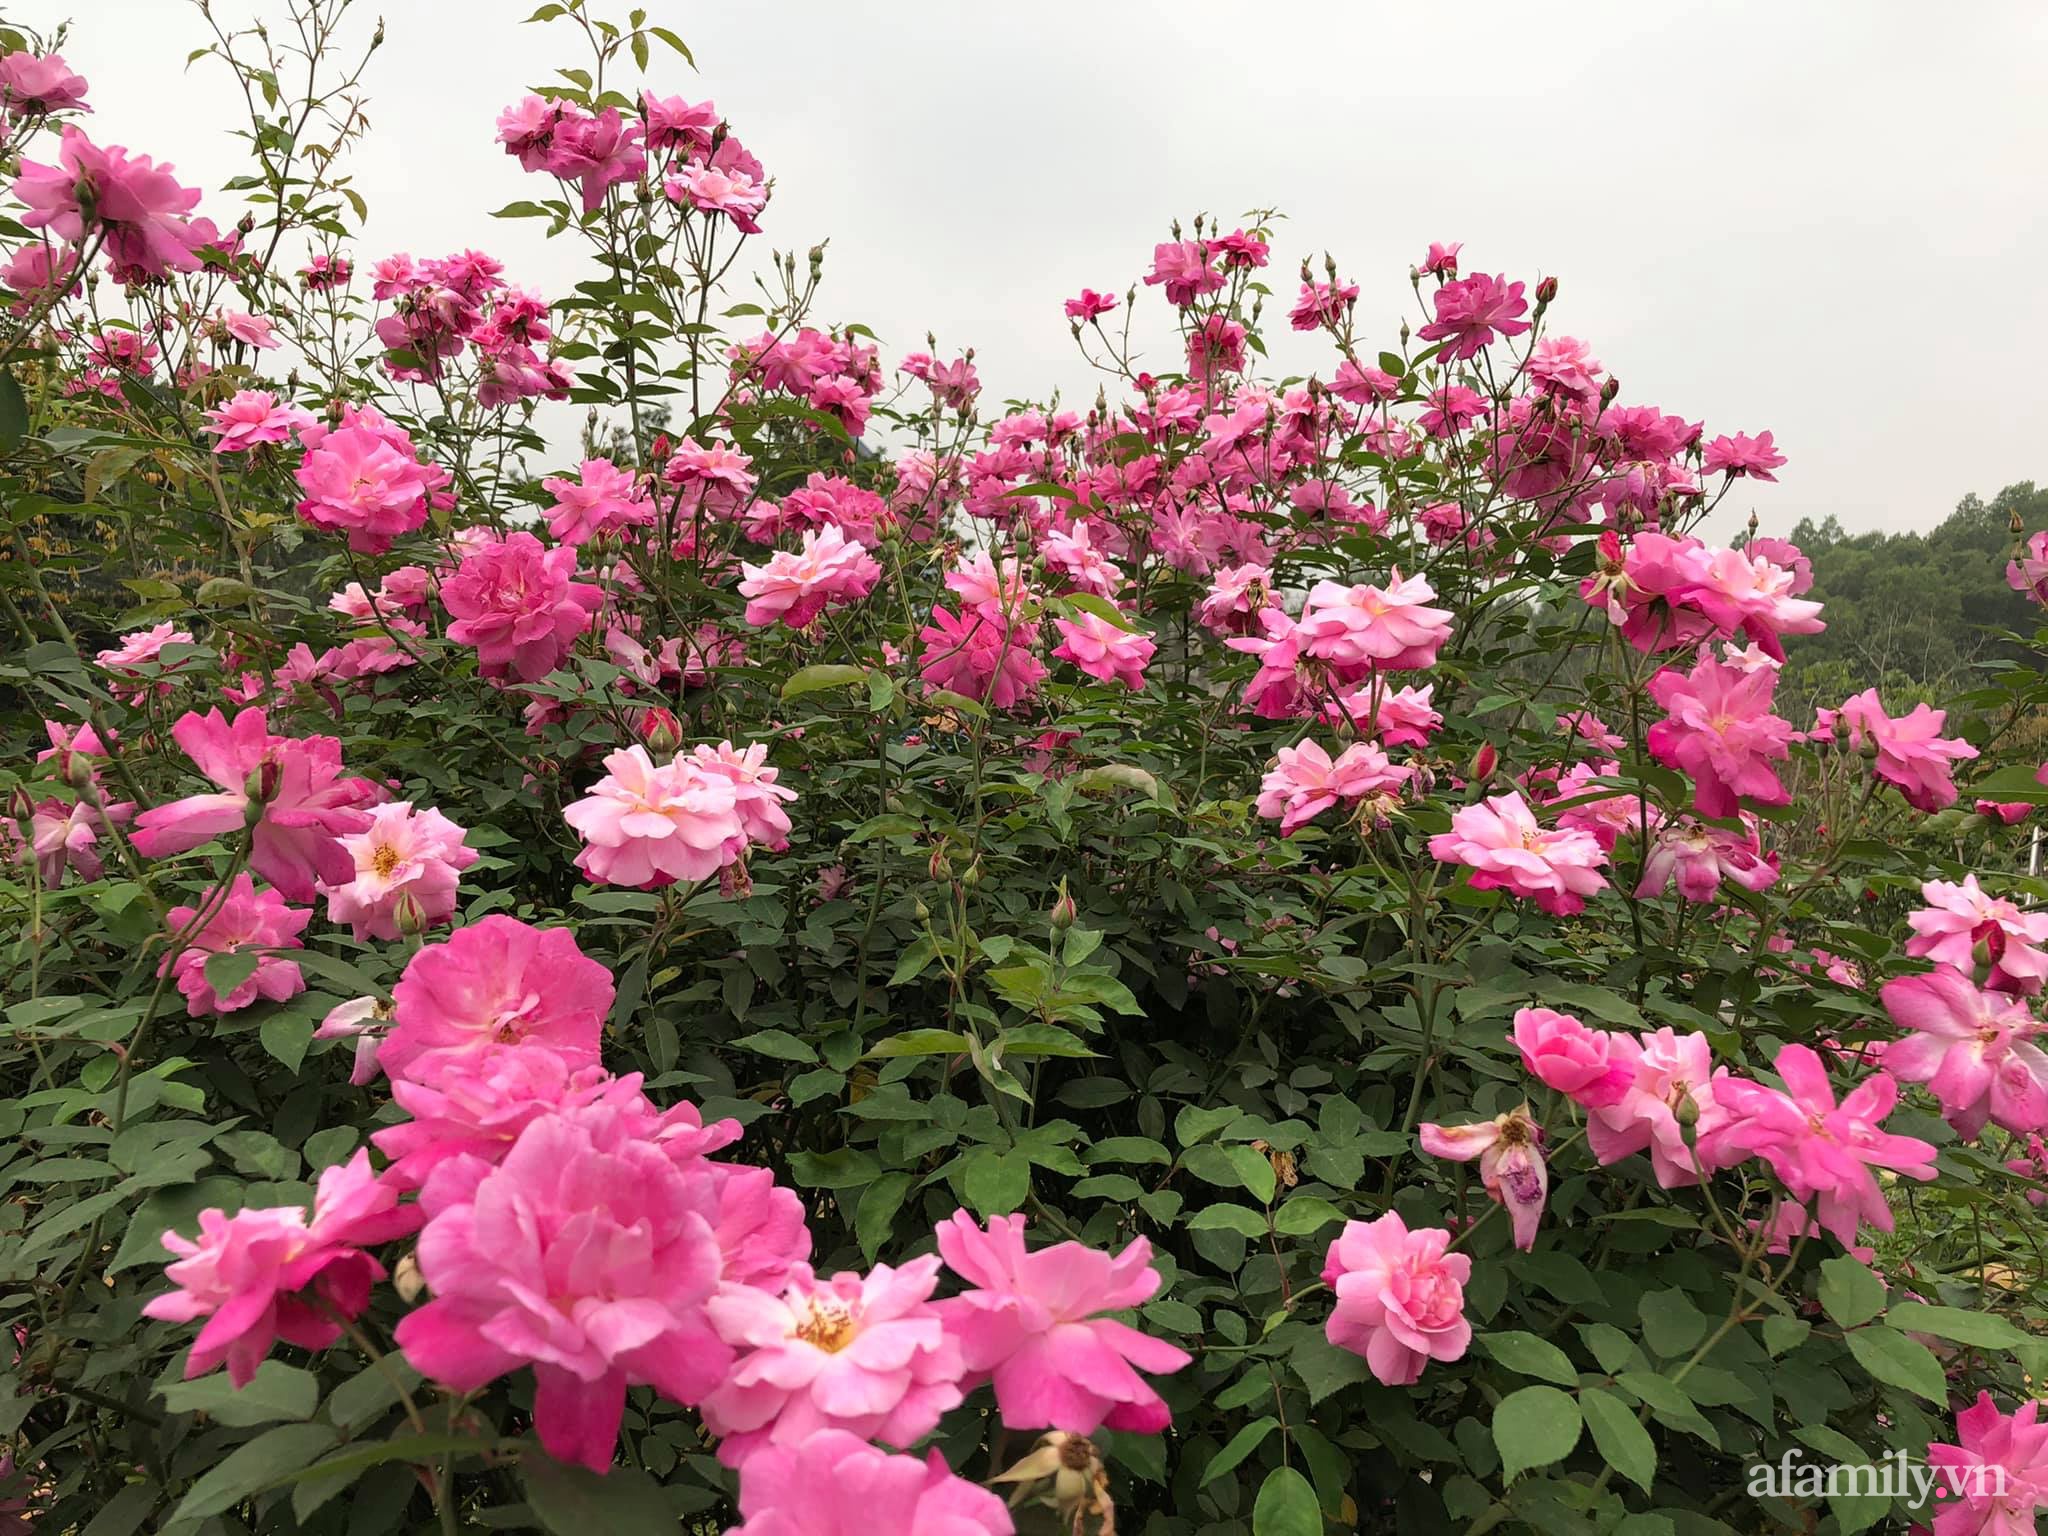 Cuộc sống an yên giữa đồi núi trong ngôi nhà hoa hồng quanh năm tỏa hương sắc của gia đình ở Ba Vì - Ảnh 9.